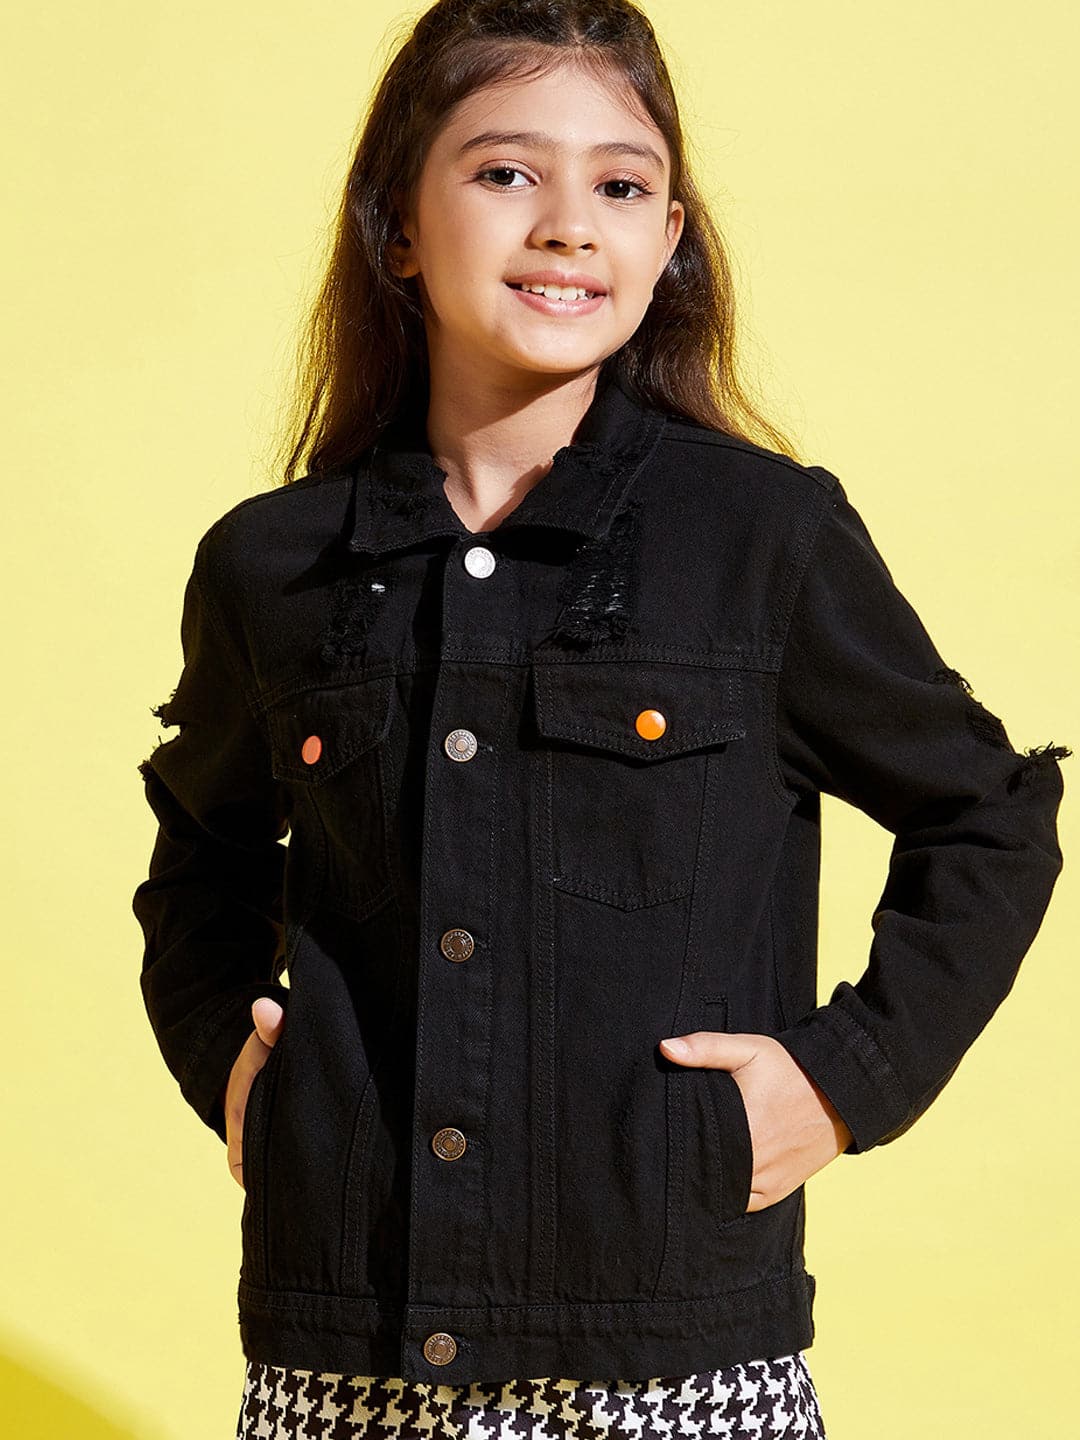 Lyush Black Distressed Neon Button Denim Jacket For Girls - Distacart